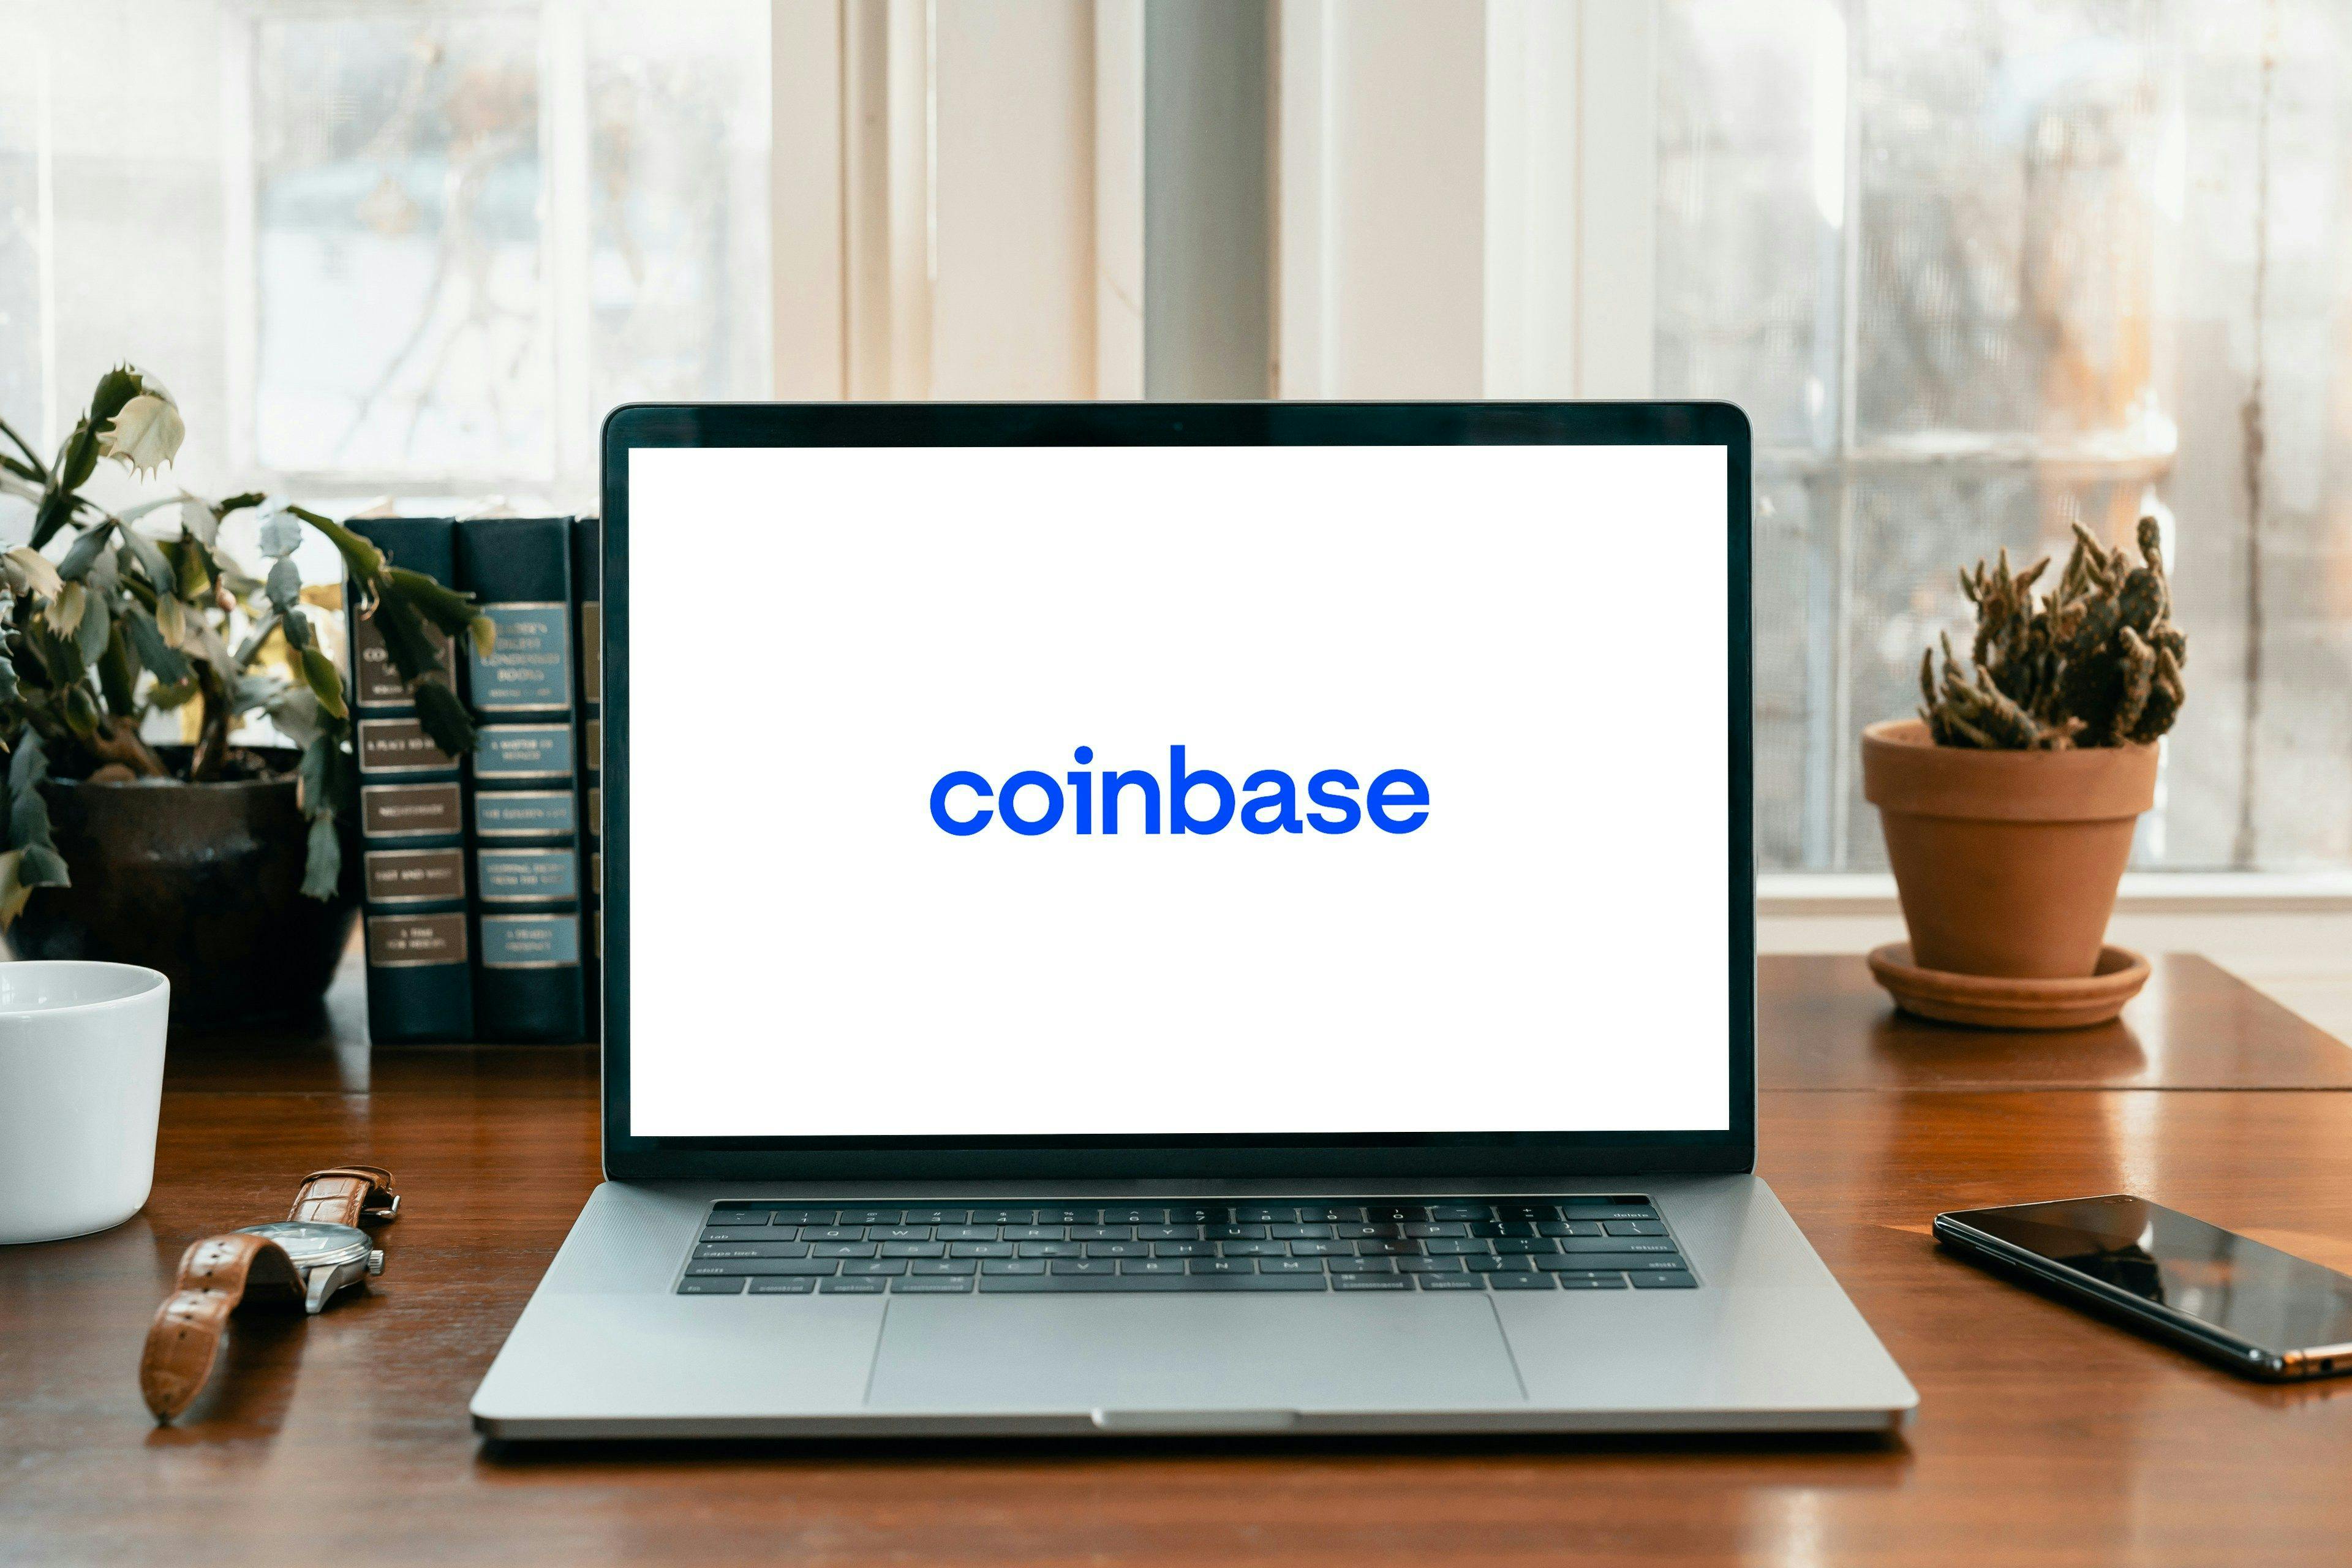 coinbase logo on a laptop